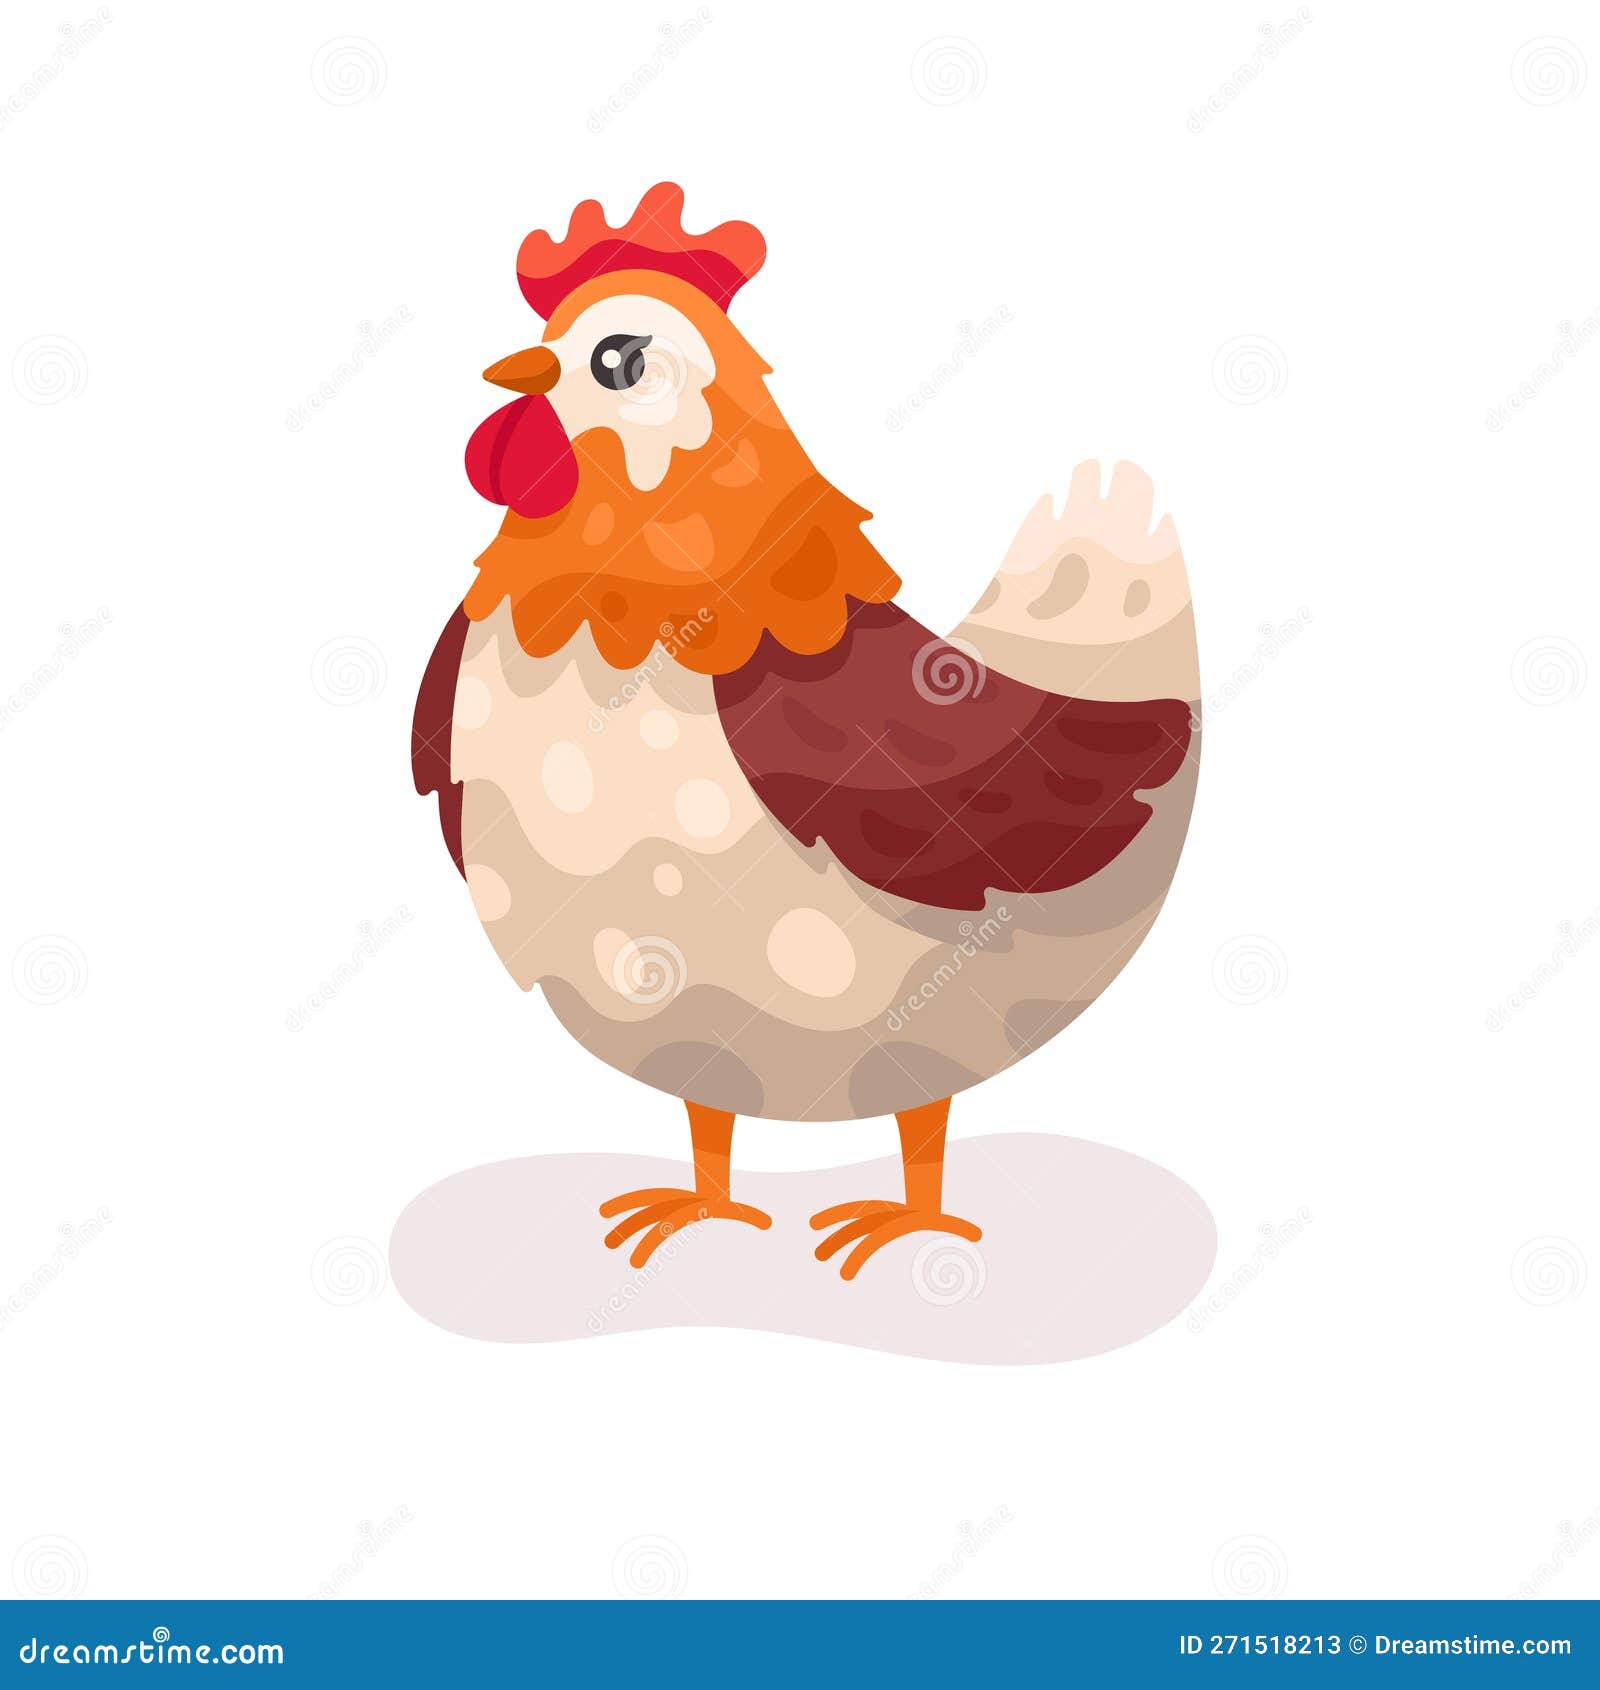 Vetor de um desenho de galinha em fundo branco animais ilustração